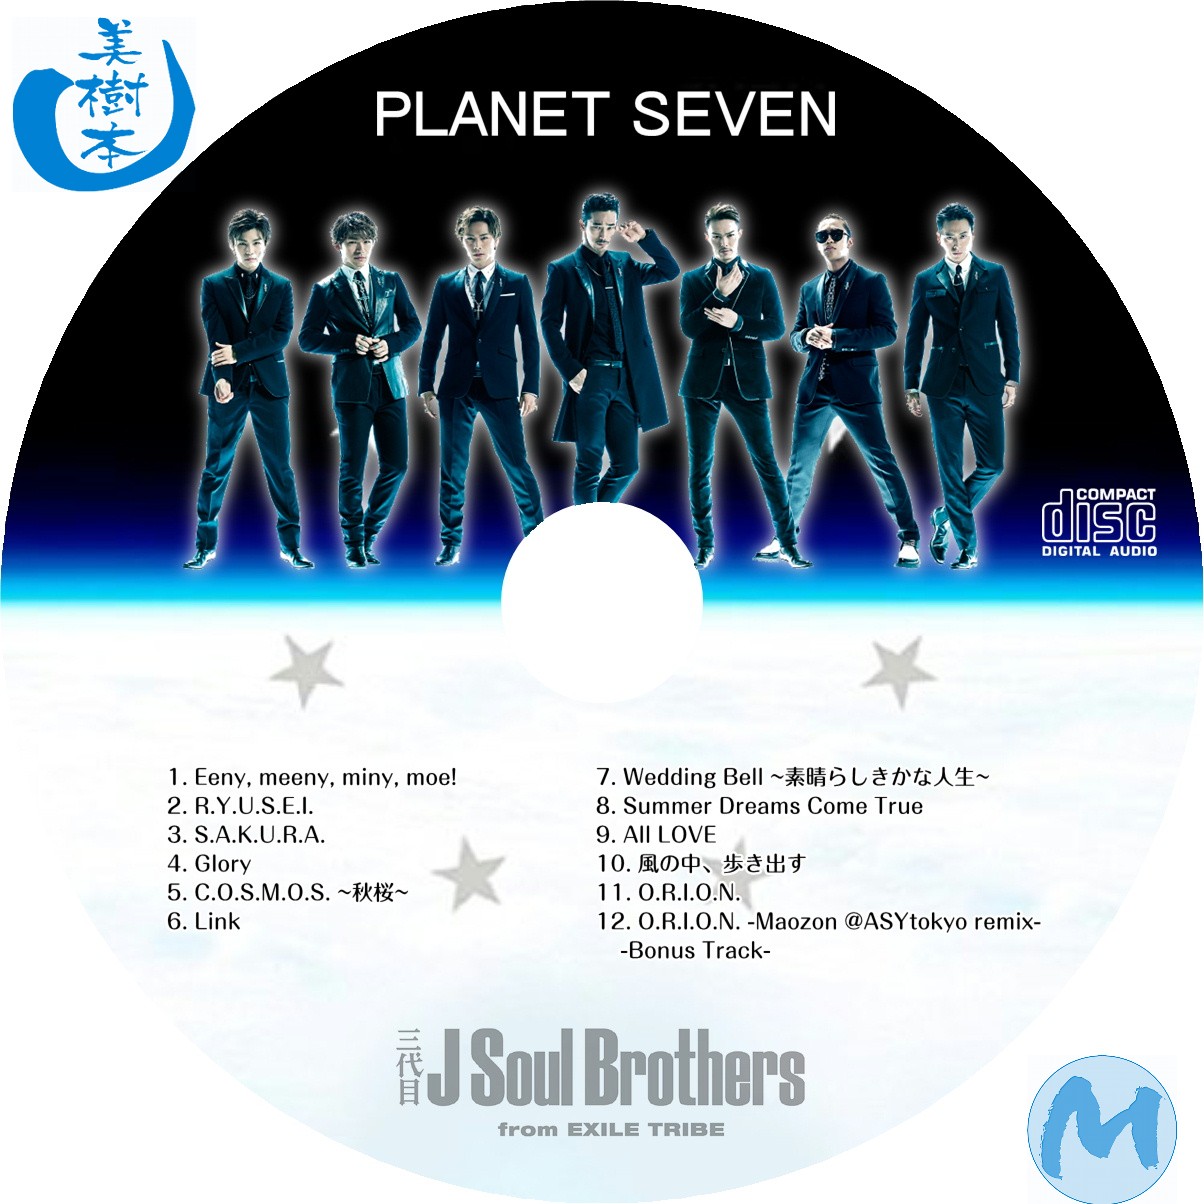 三代目J soul brothers ブループラネットdvd - ミュージック